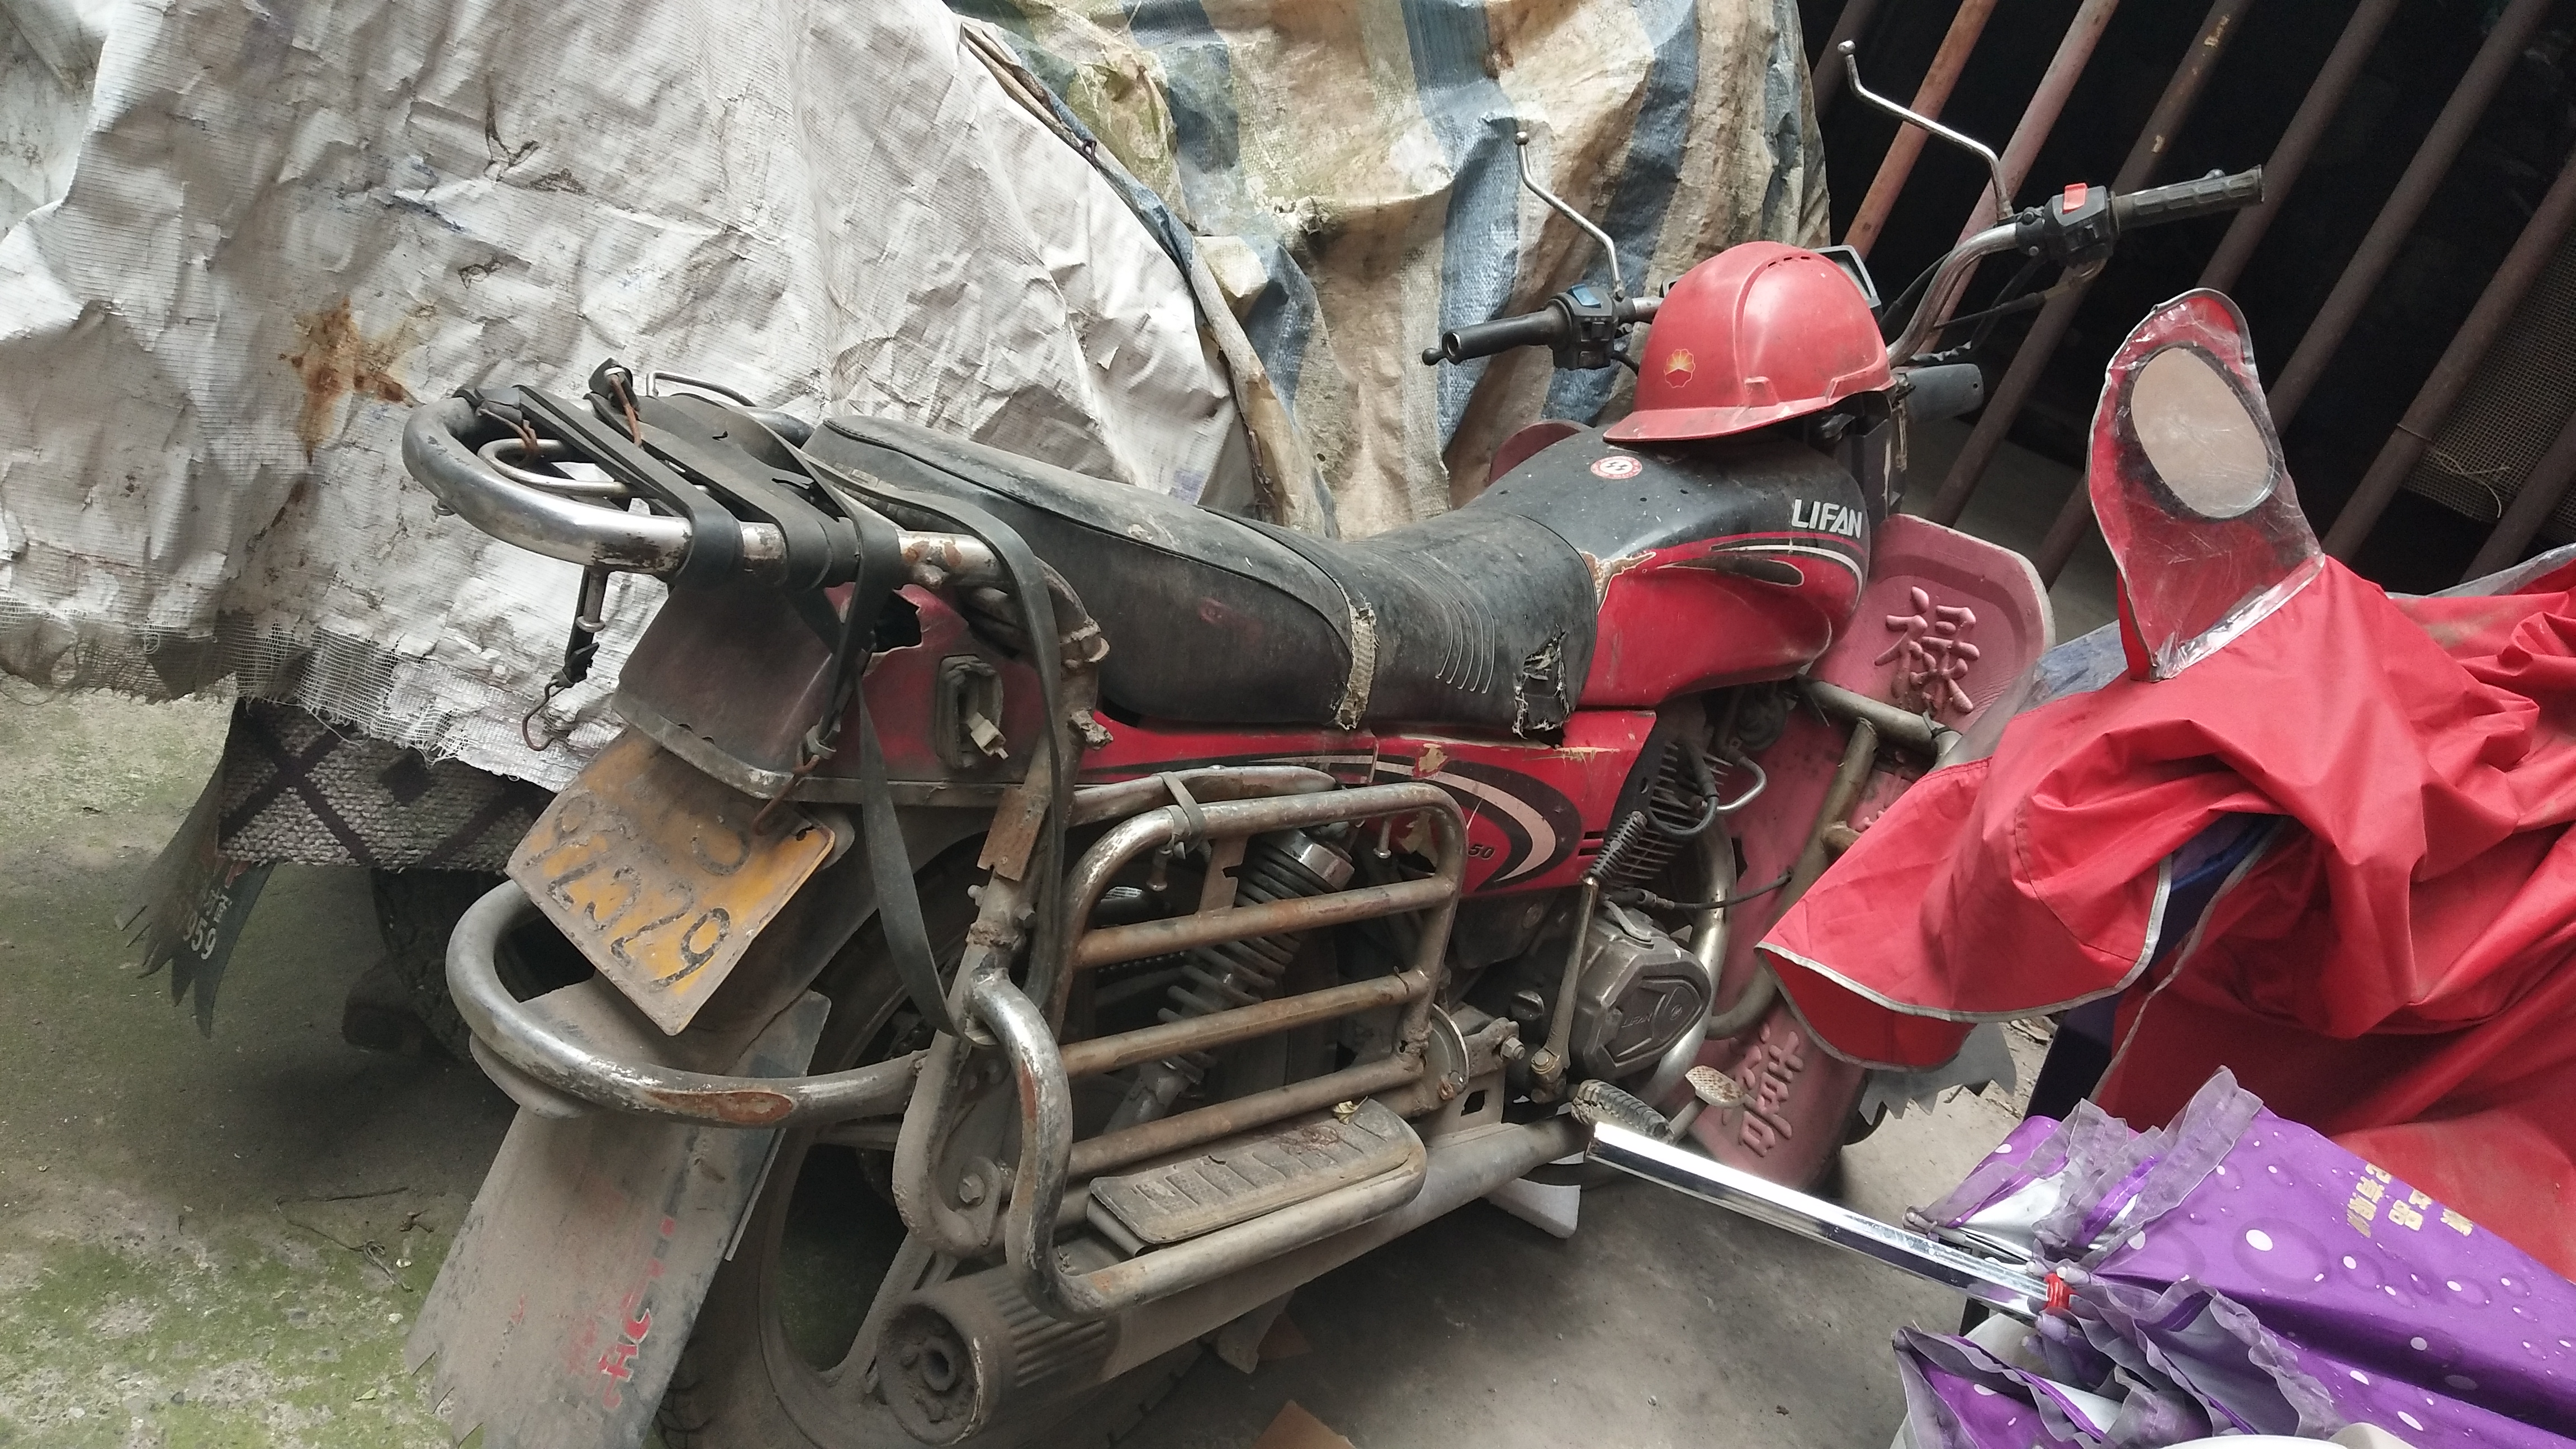 出售一台报废架子摩托车可拆配件联系电话159829